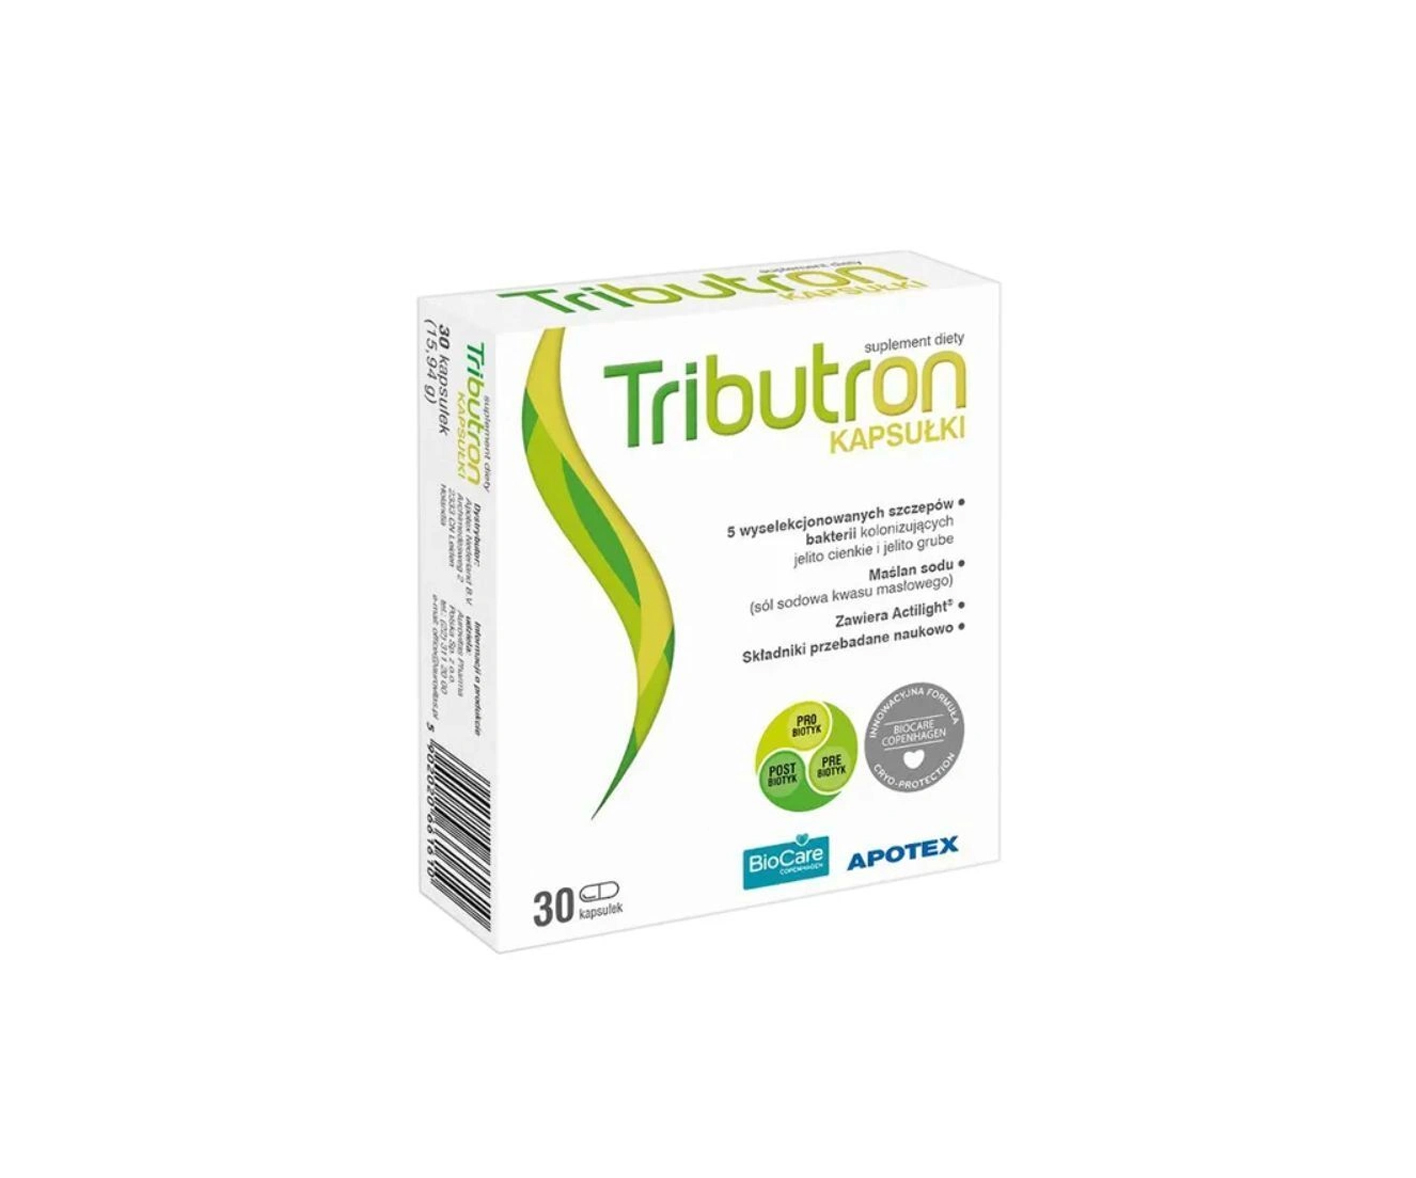 Tributron, synbiotyk dla dorosłych